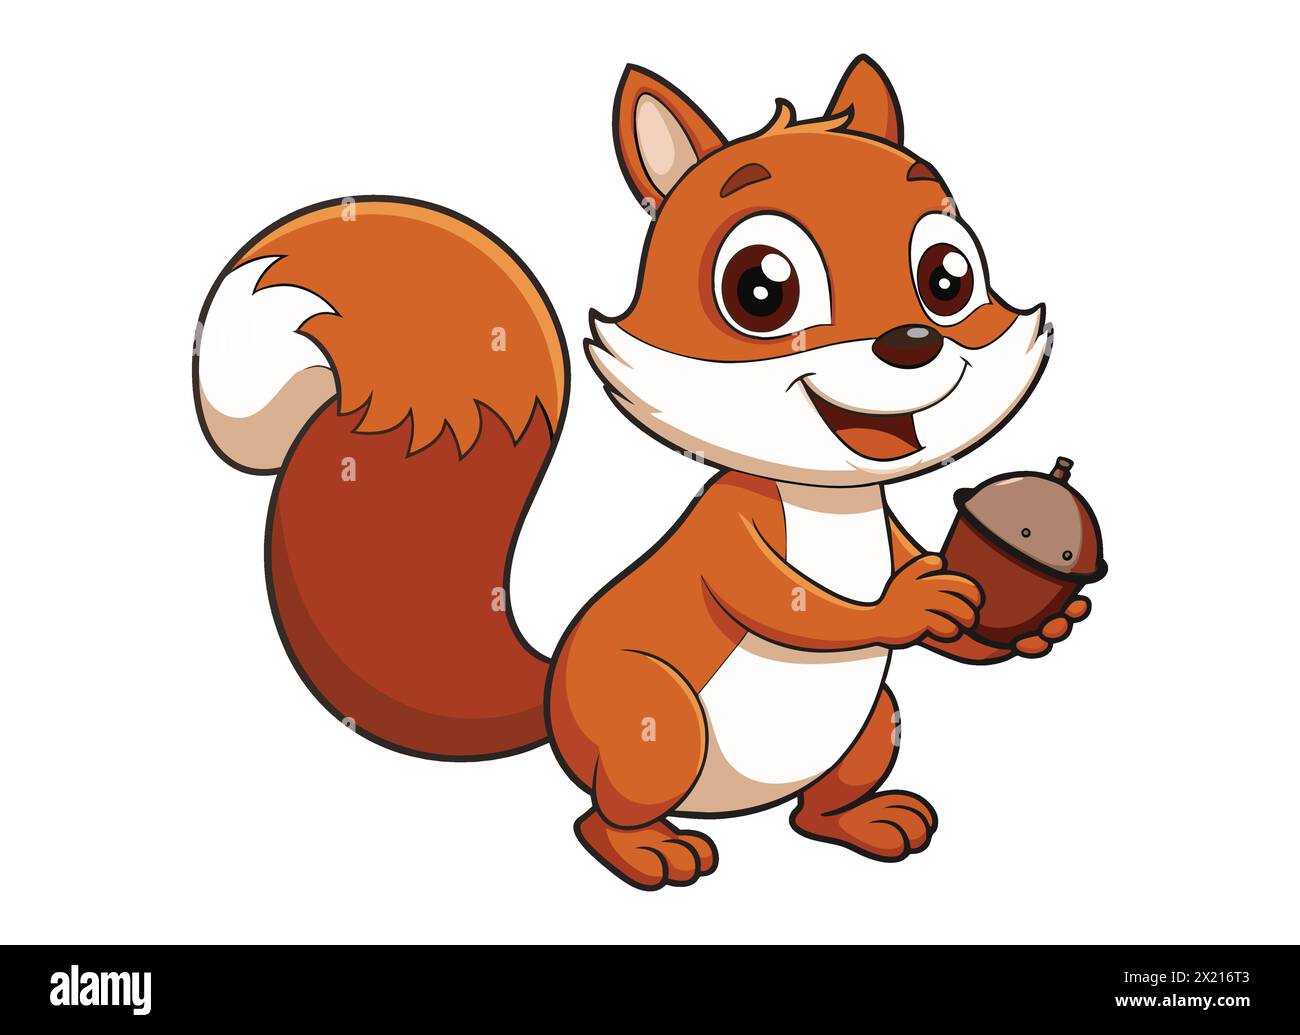 Fröhliches Eichhörnchen Mit Acorn. Verspielter Eichhörnchen-Cartoon. Niedlicher Eichhörnchen-Charakter mit Mutter Stock Vektor